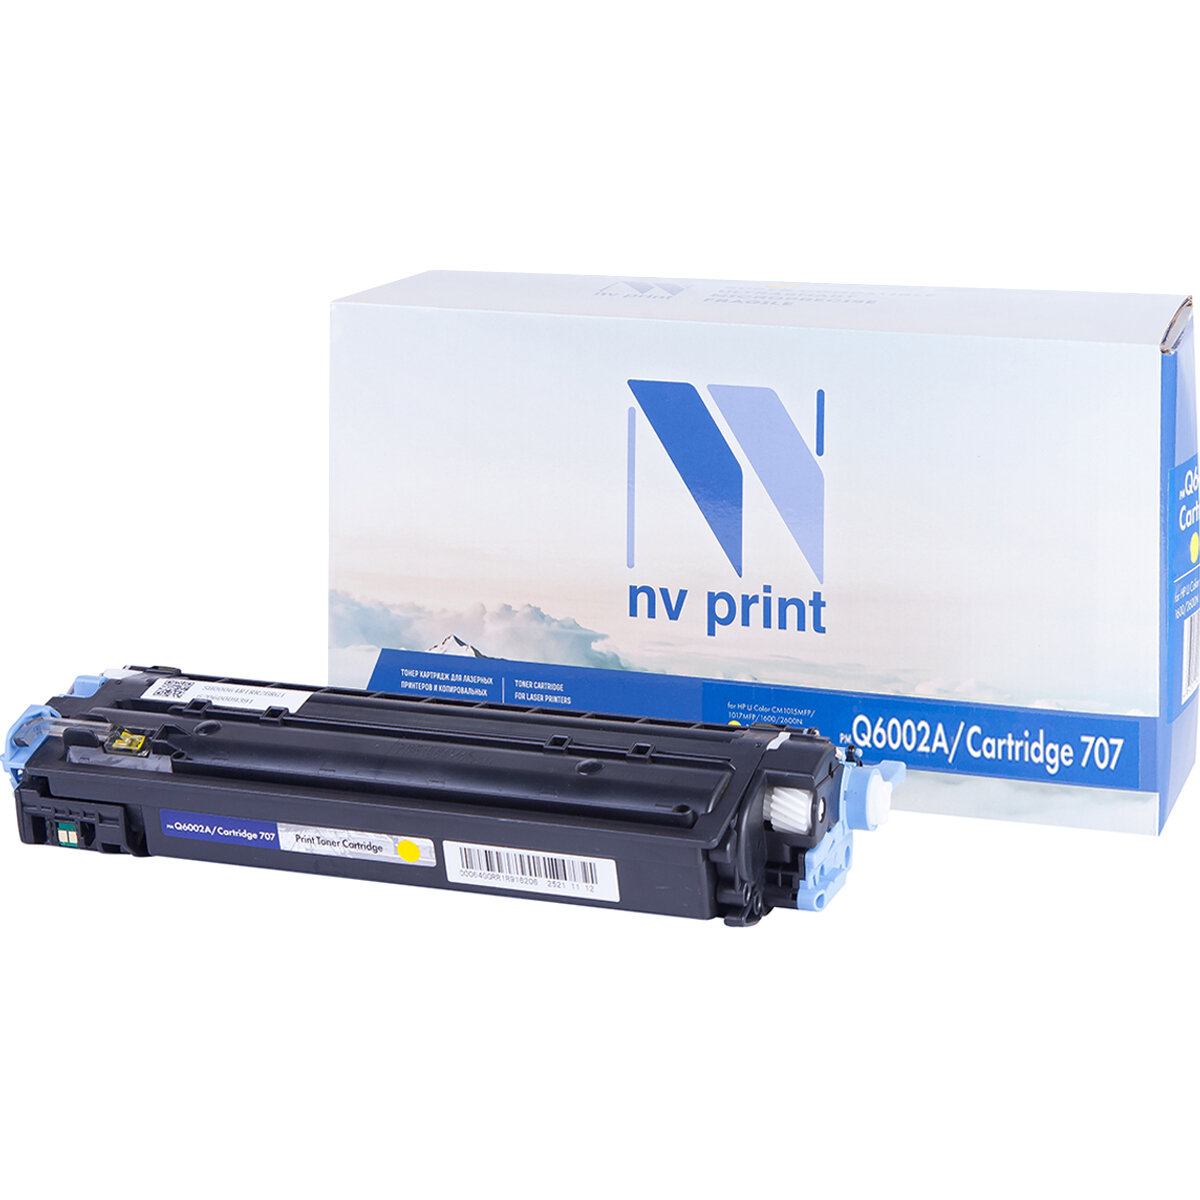 NV Print Картридж NVP совместимый NV-Q6002A/NV-707 Yellow универсальные